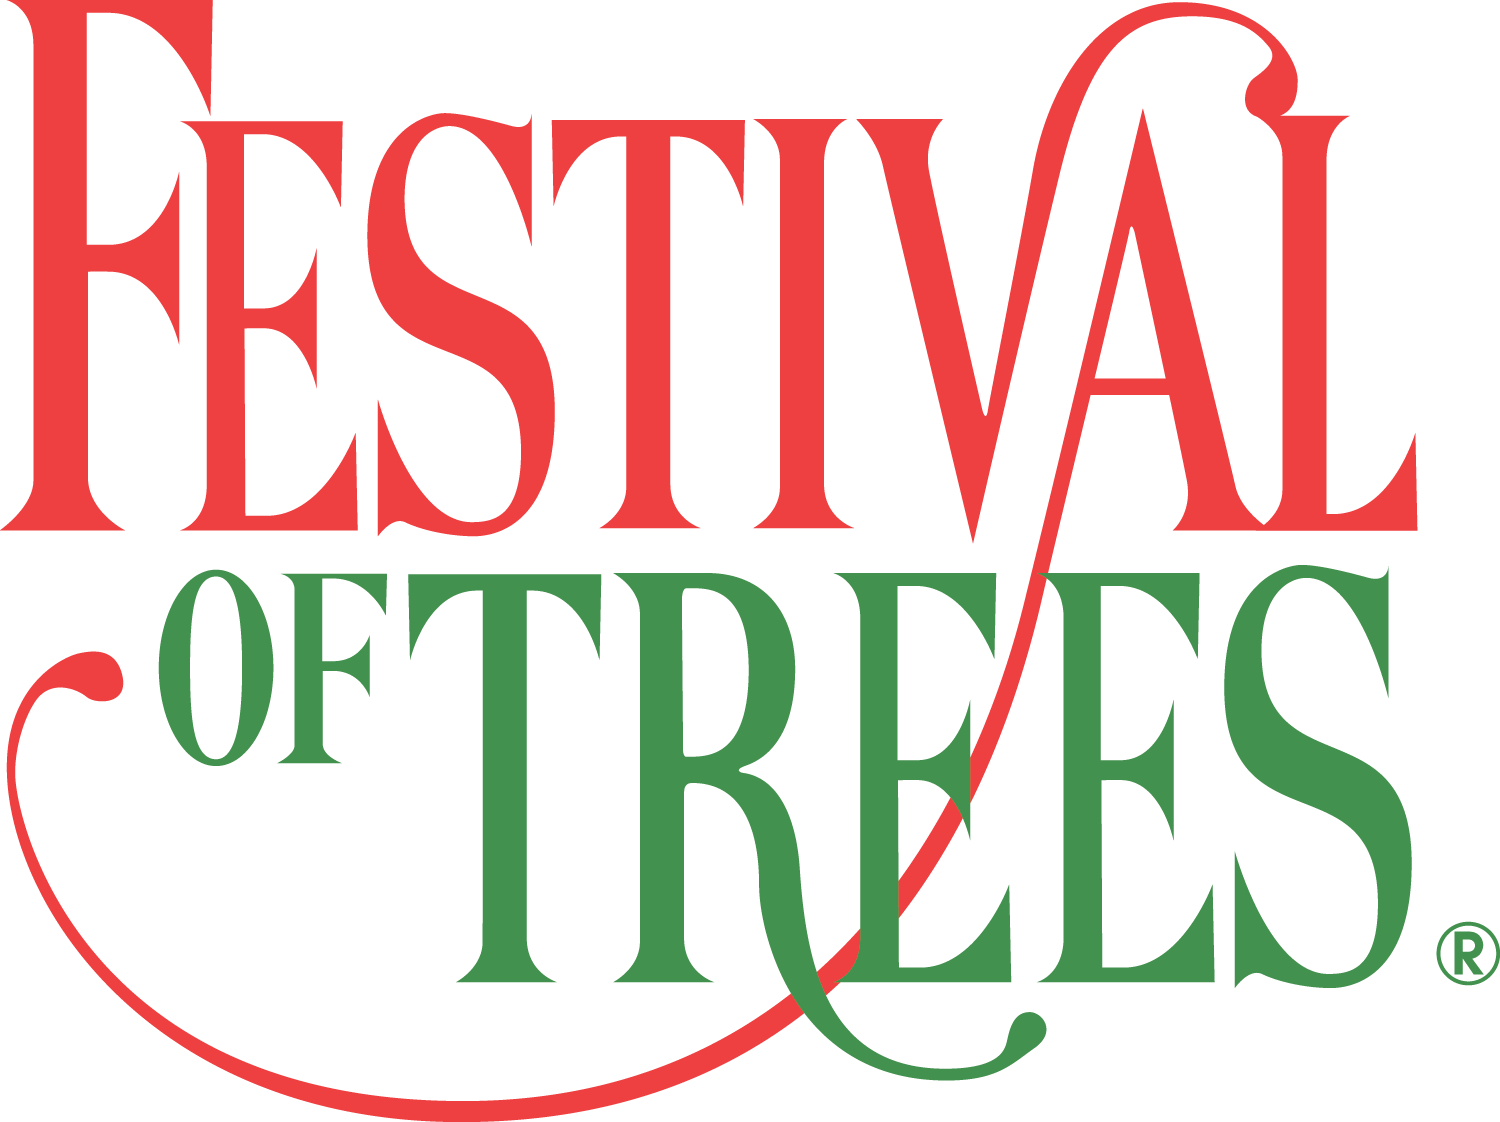 Festival of Trees logo 2021